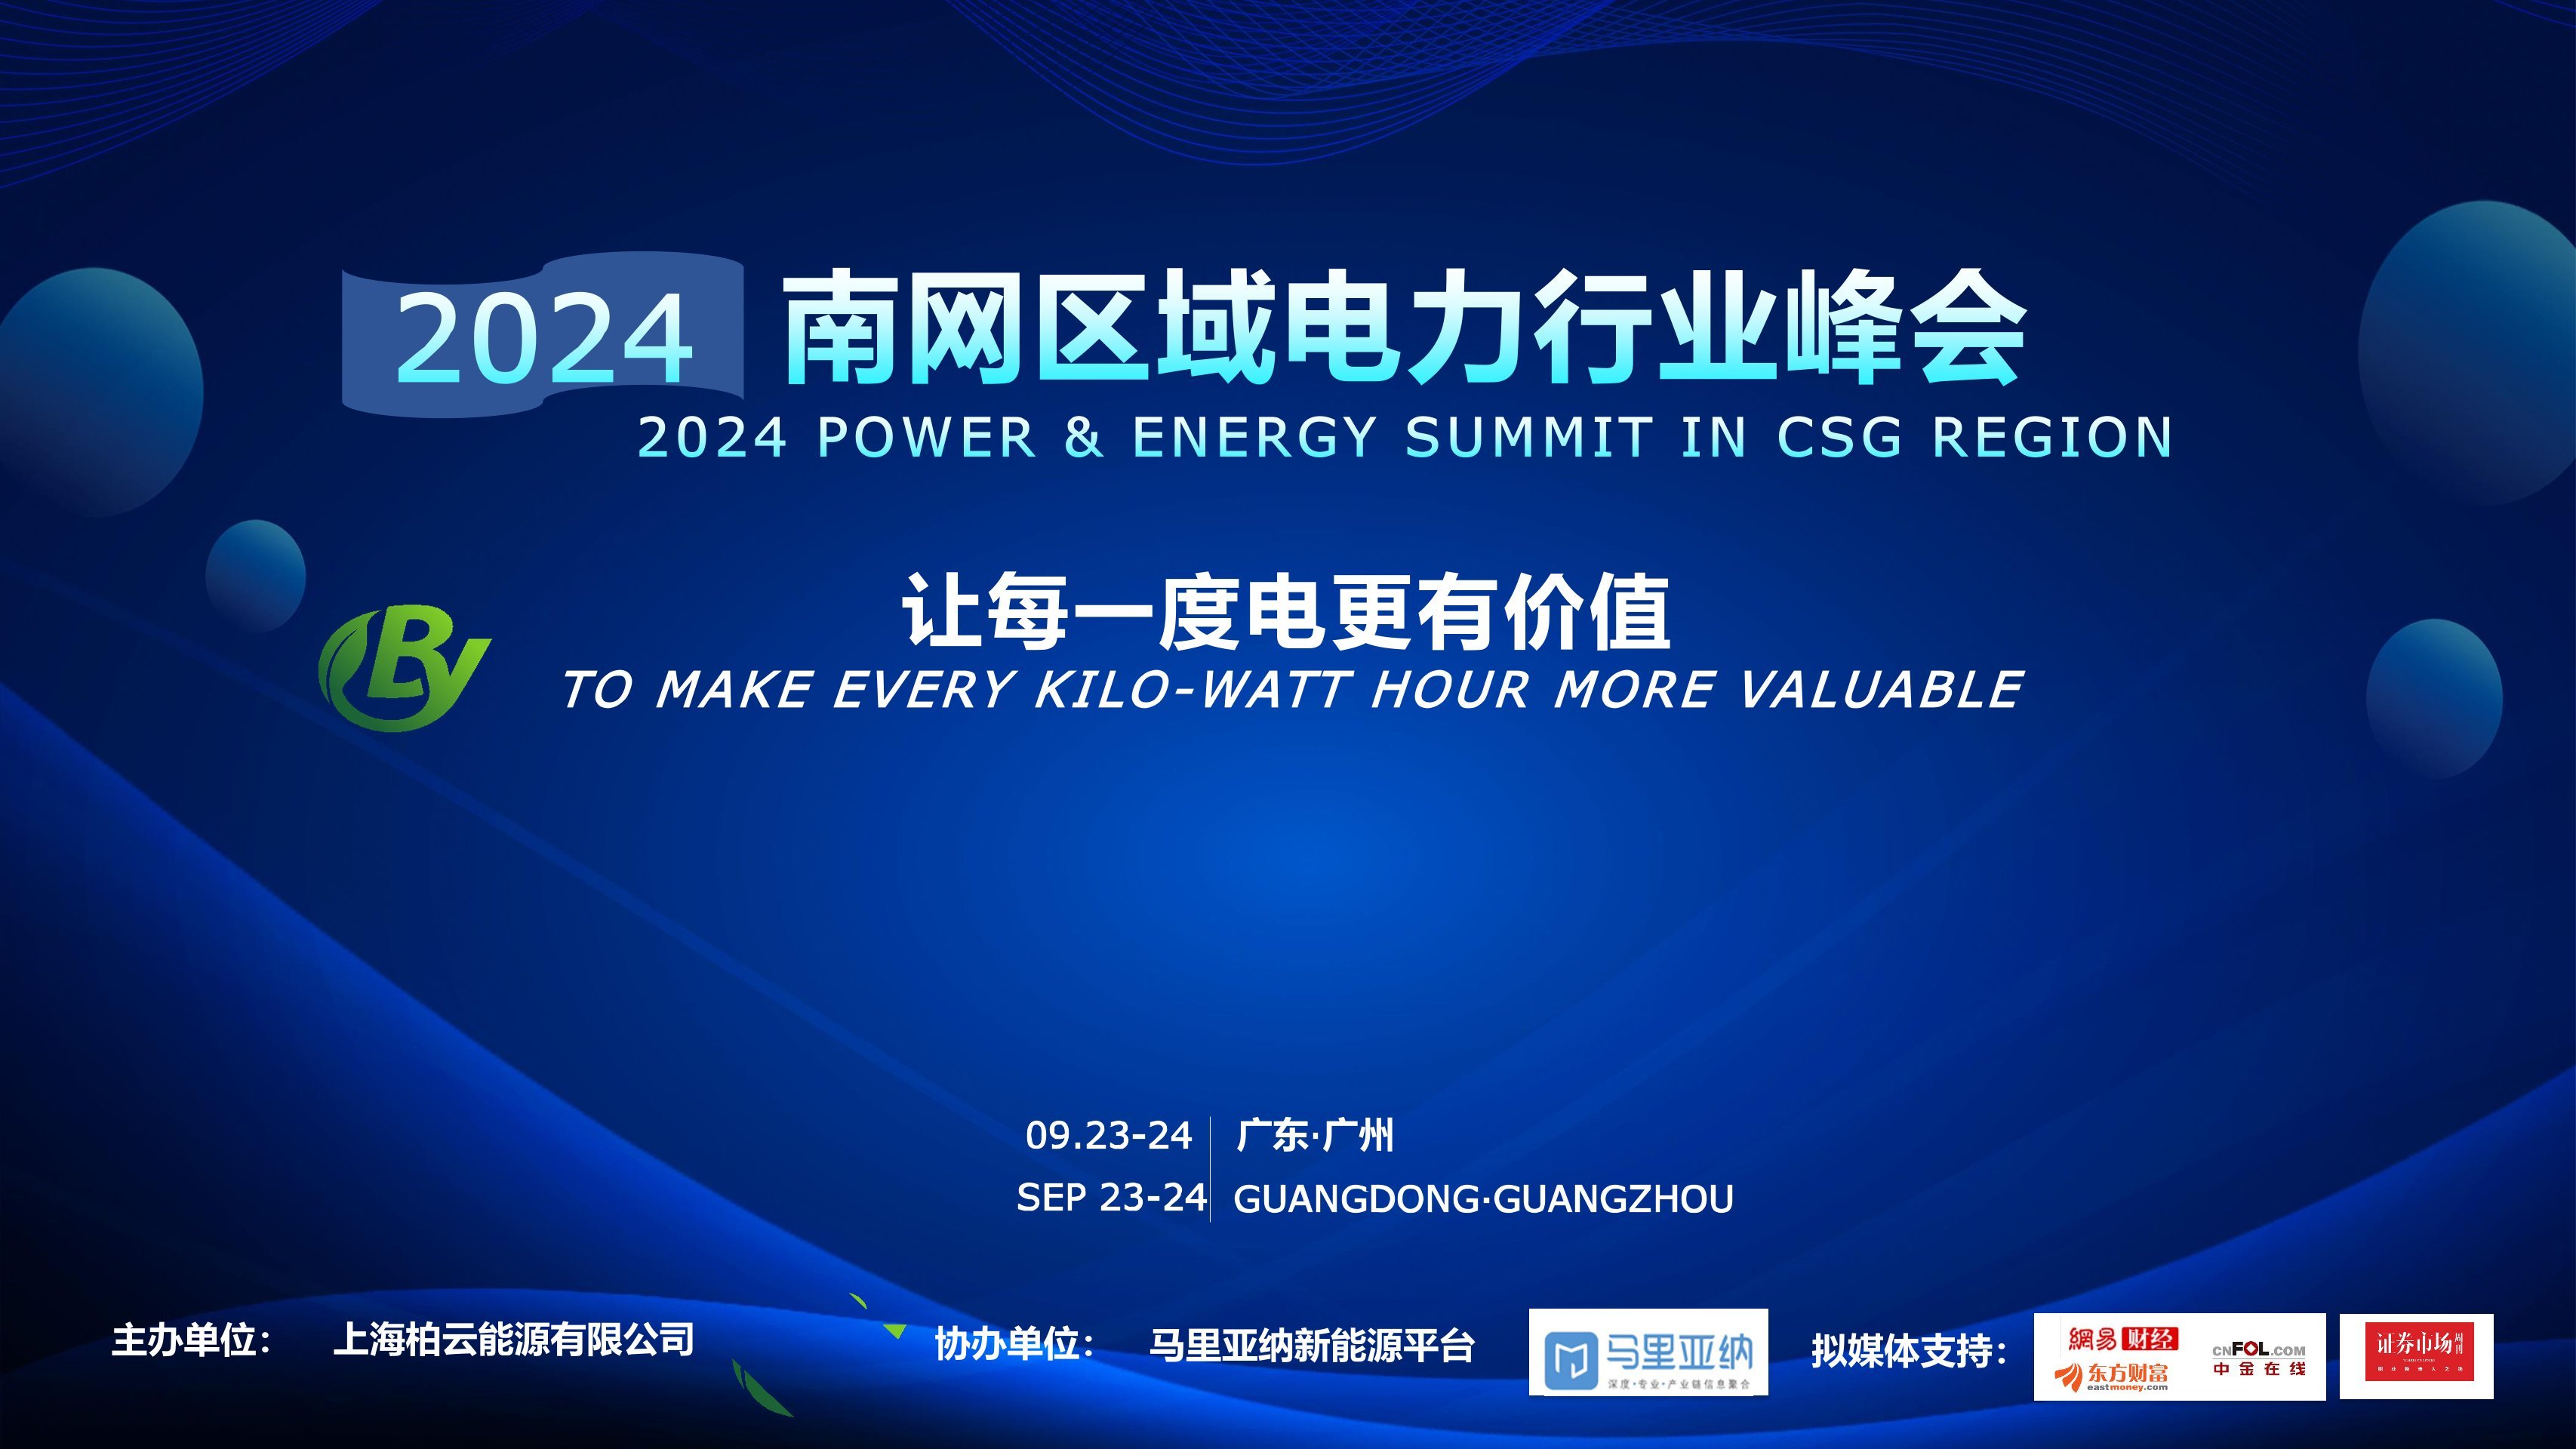 2024年南网区域电力行业峰会